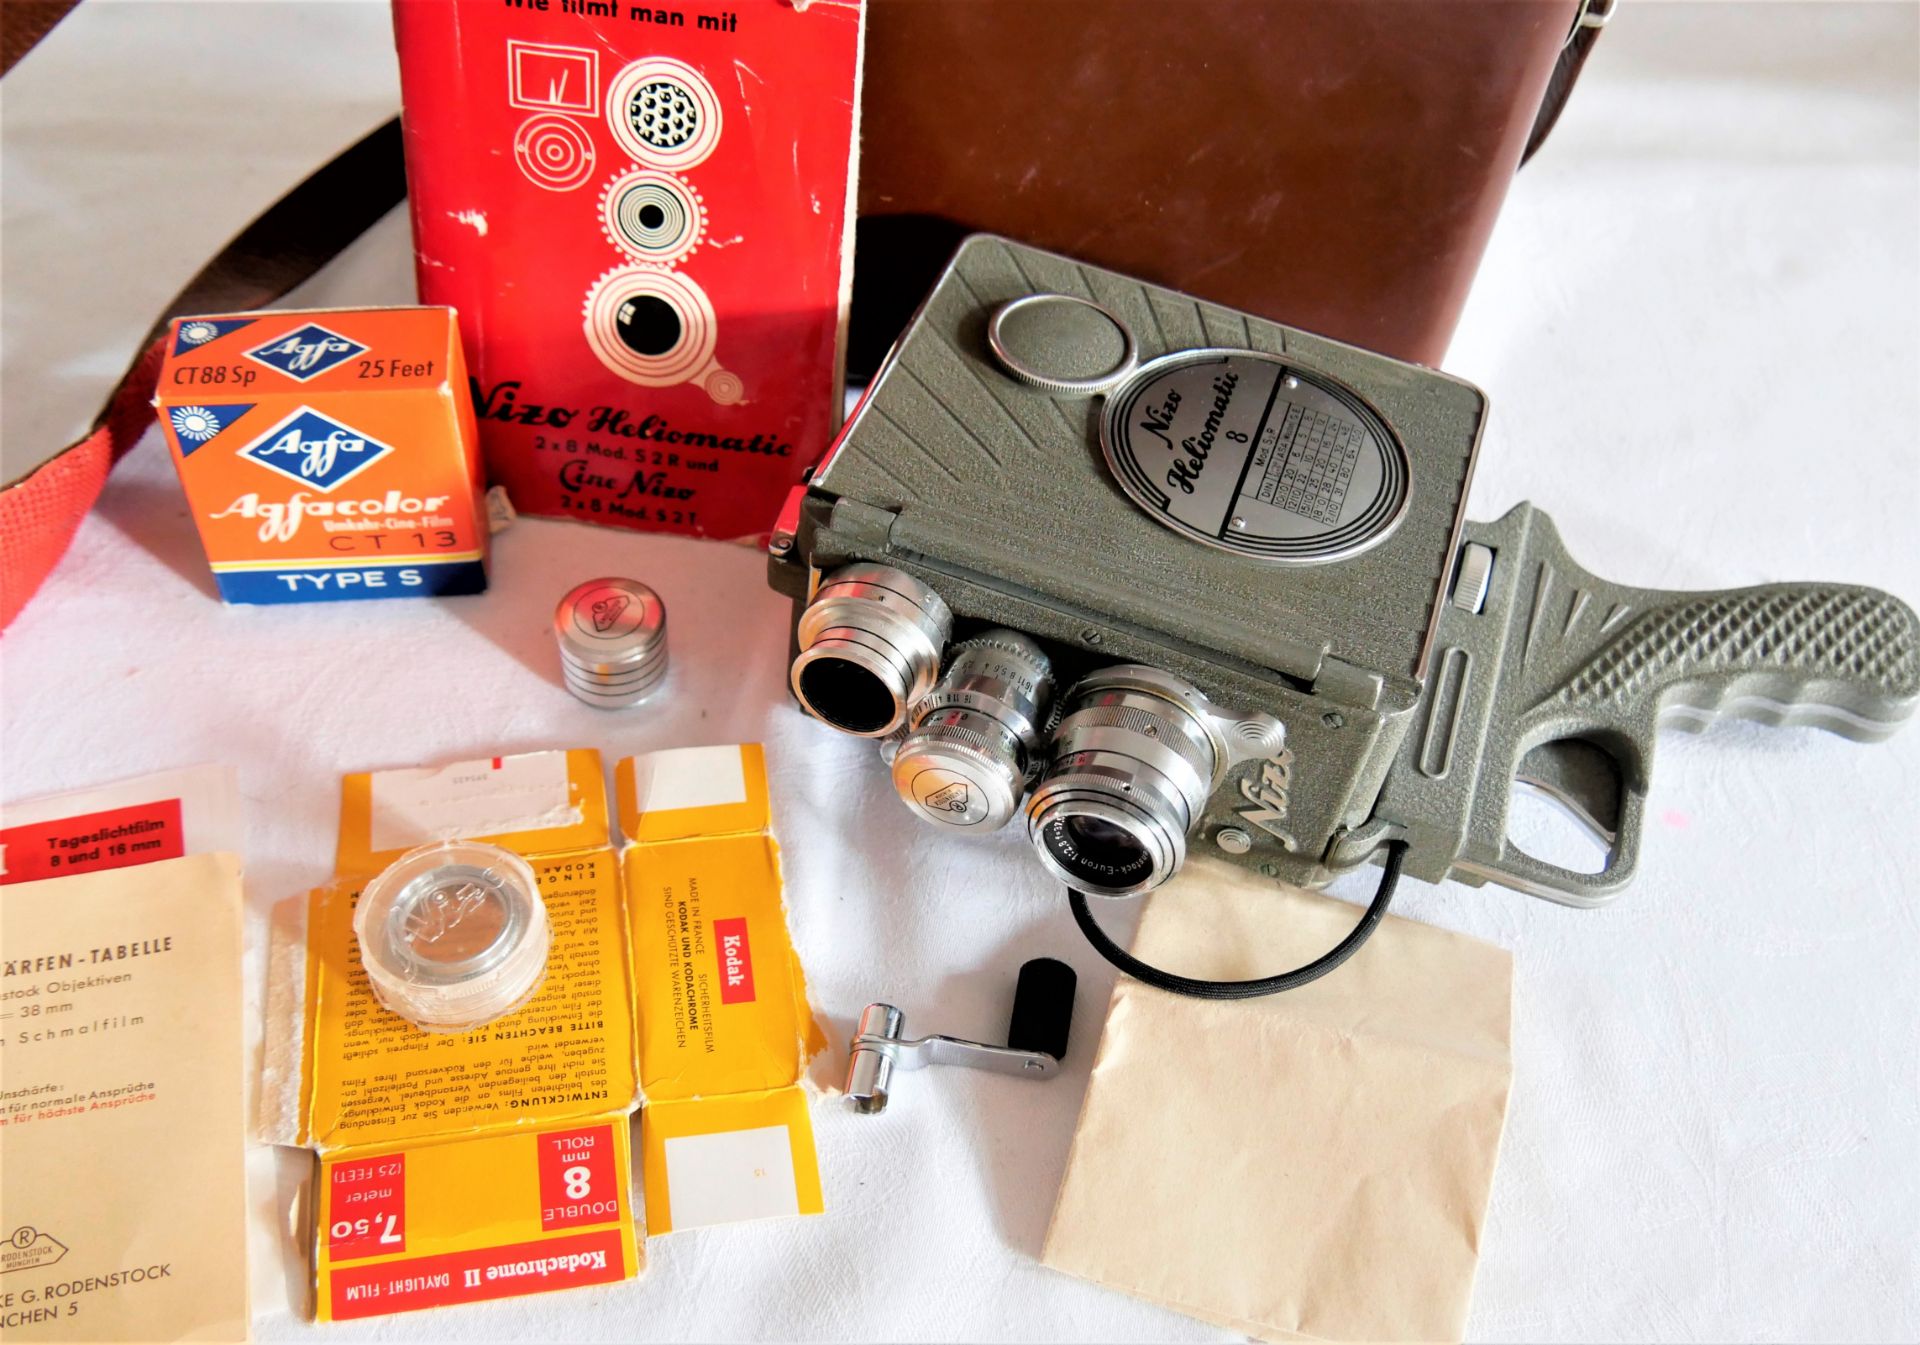 Kamera "Nizo Heliomatic 8", Modell S2R, im Original-Koffer, mit Zubehör, guter Zustand.